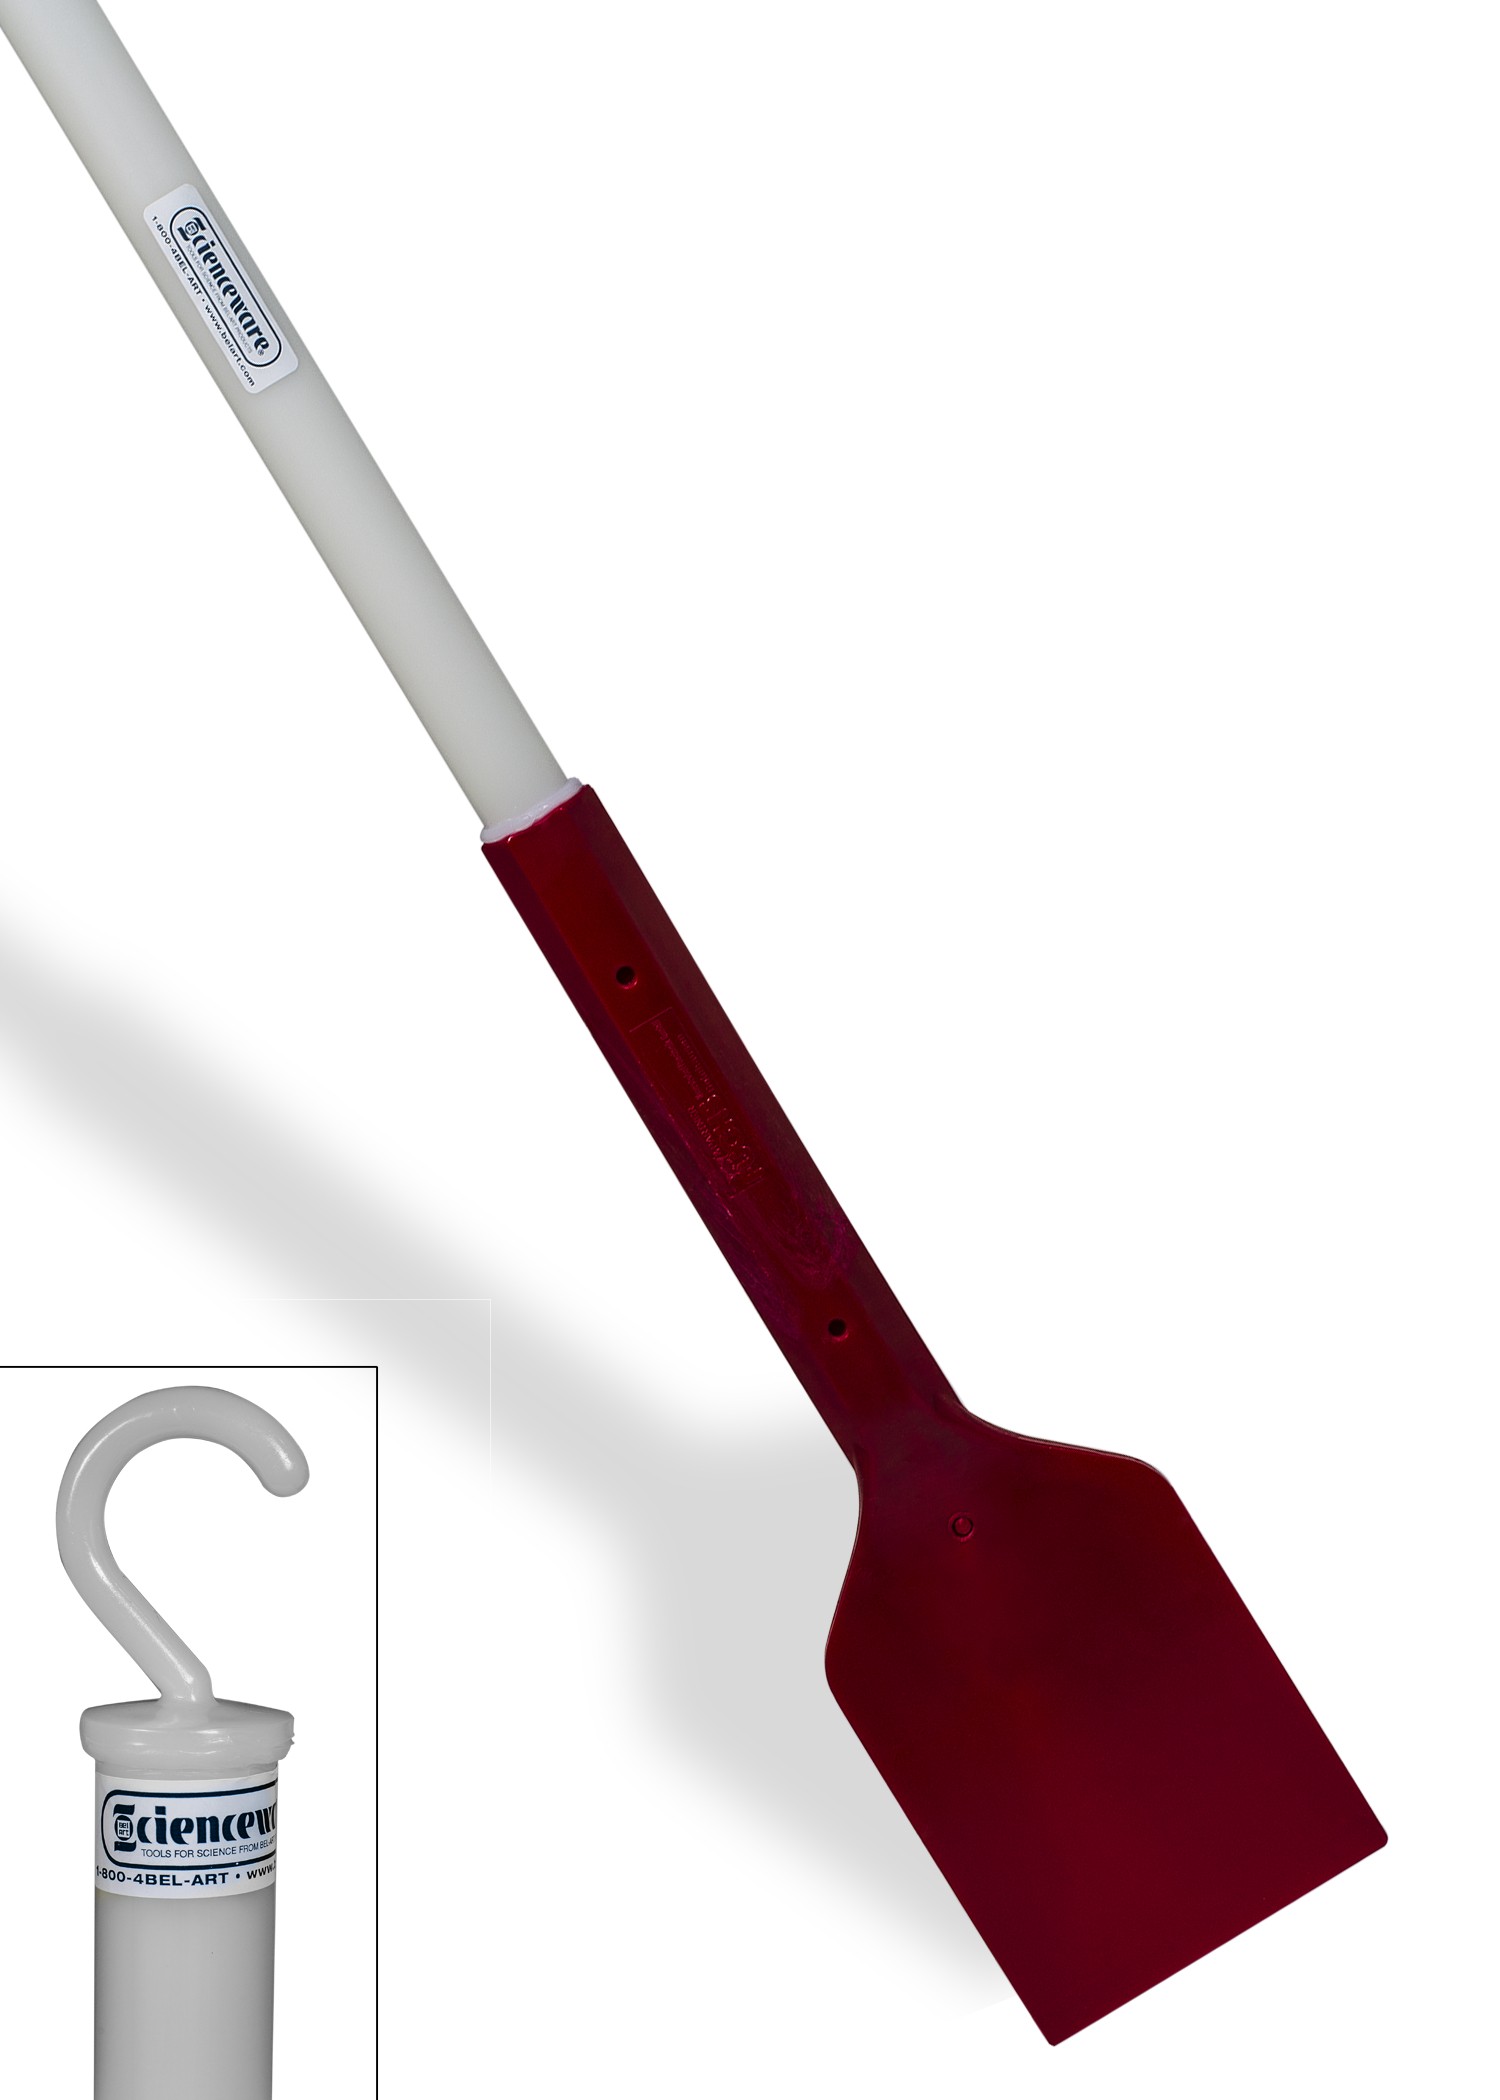 SP Bel-Art Hard Plastic Scraper; 72 in. Handle, 5 x 6 in. Blade. Red